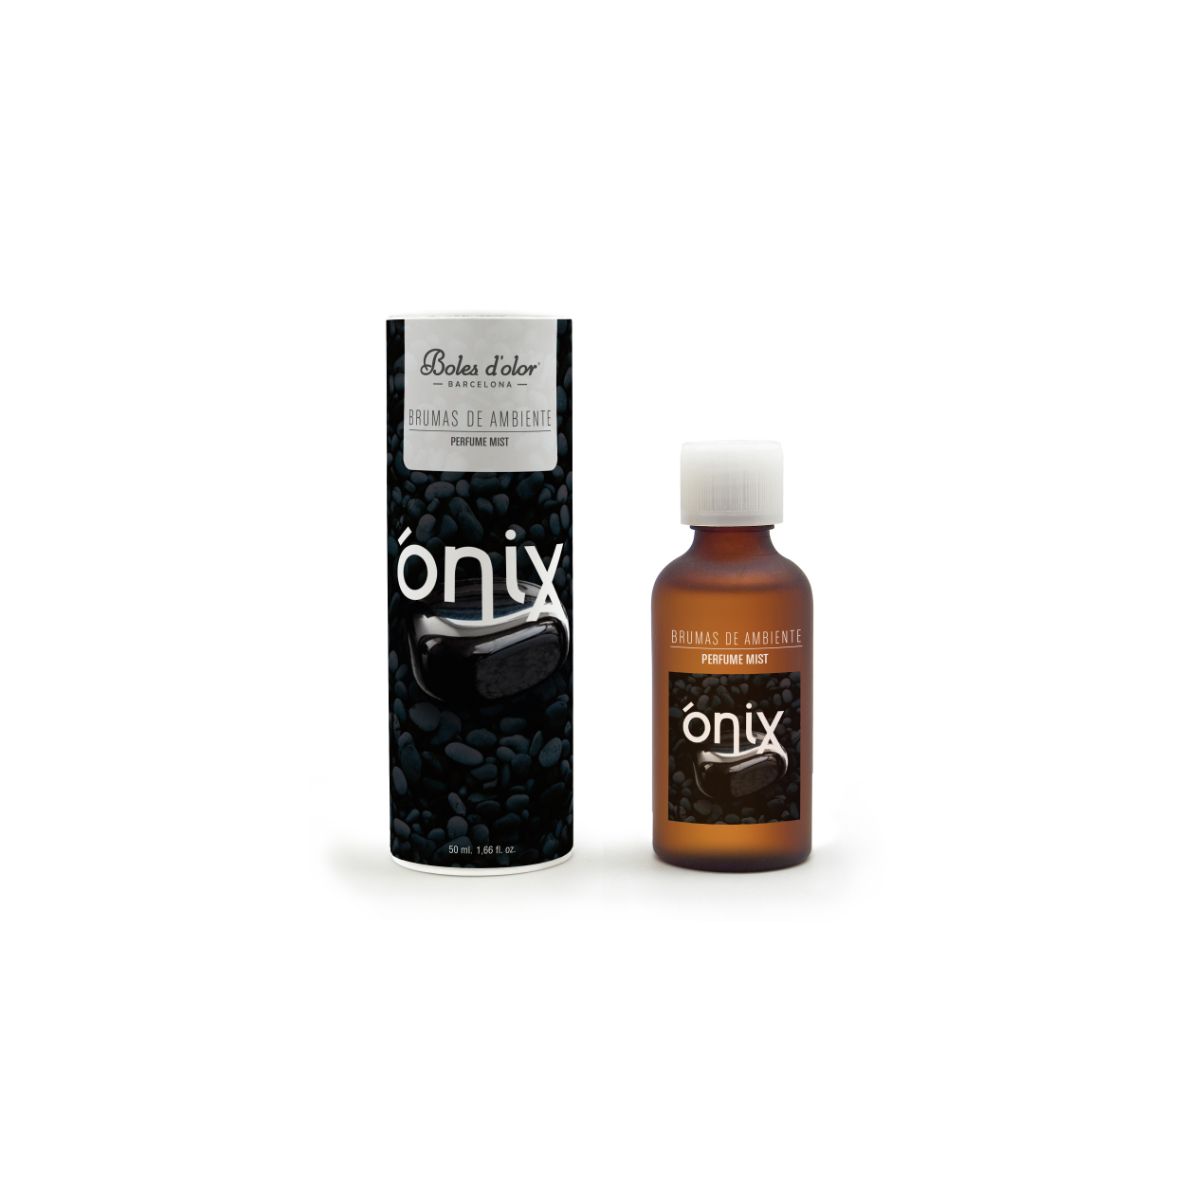 Bruma Onix 50ml Boles d'olor